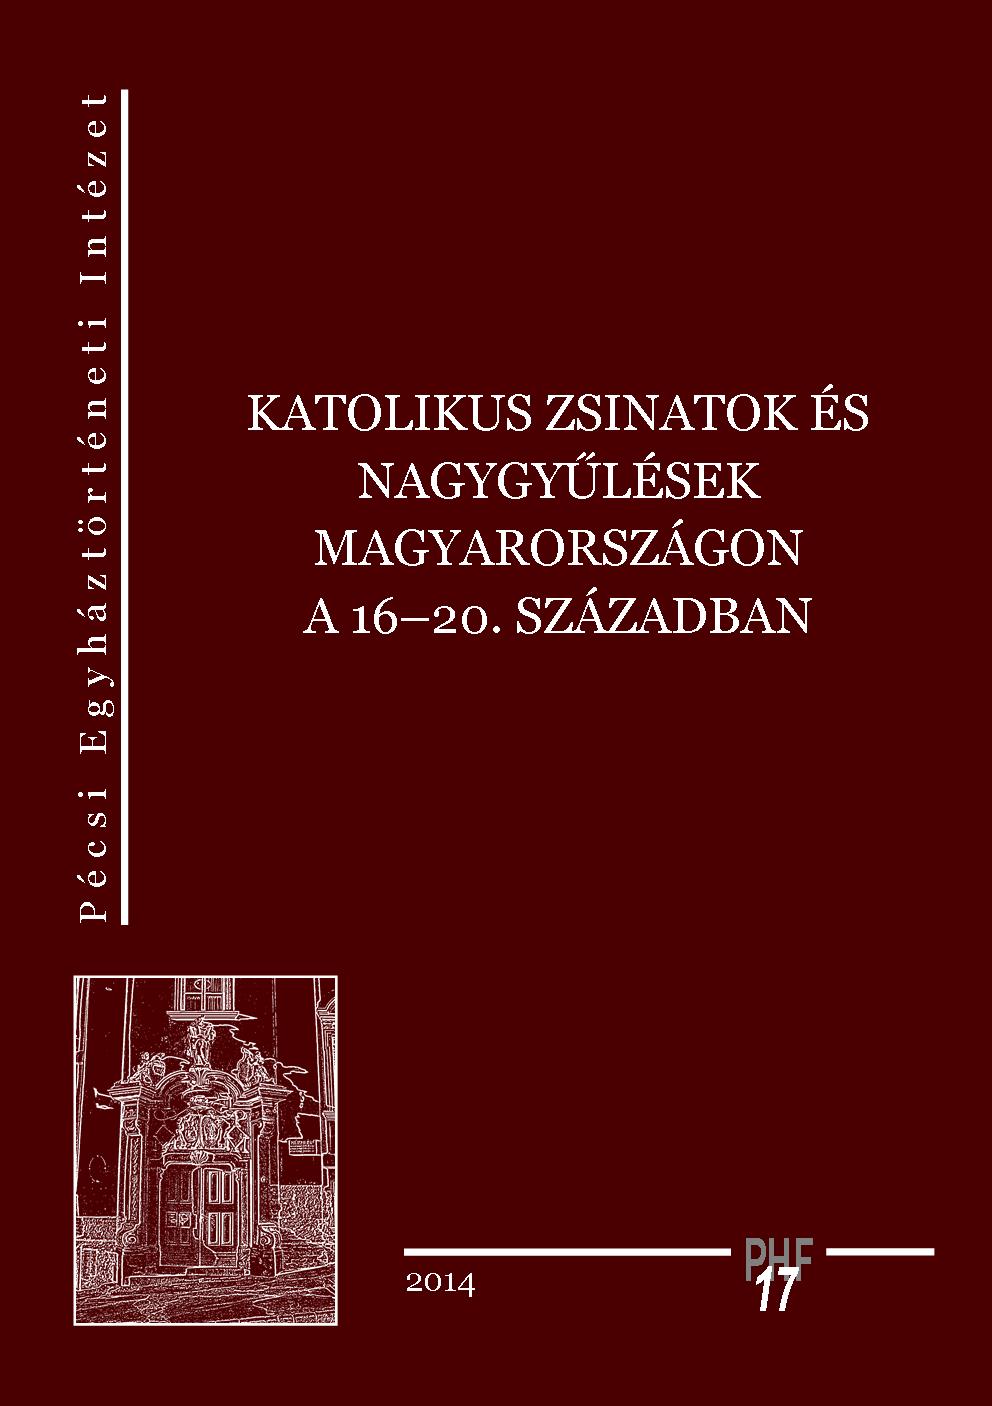 Megjelent a Katolikus zsinatok és nagygyűlések Magyarországon a 16–20. században című kiadvány